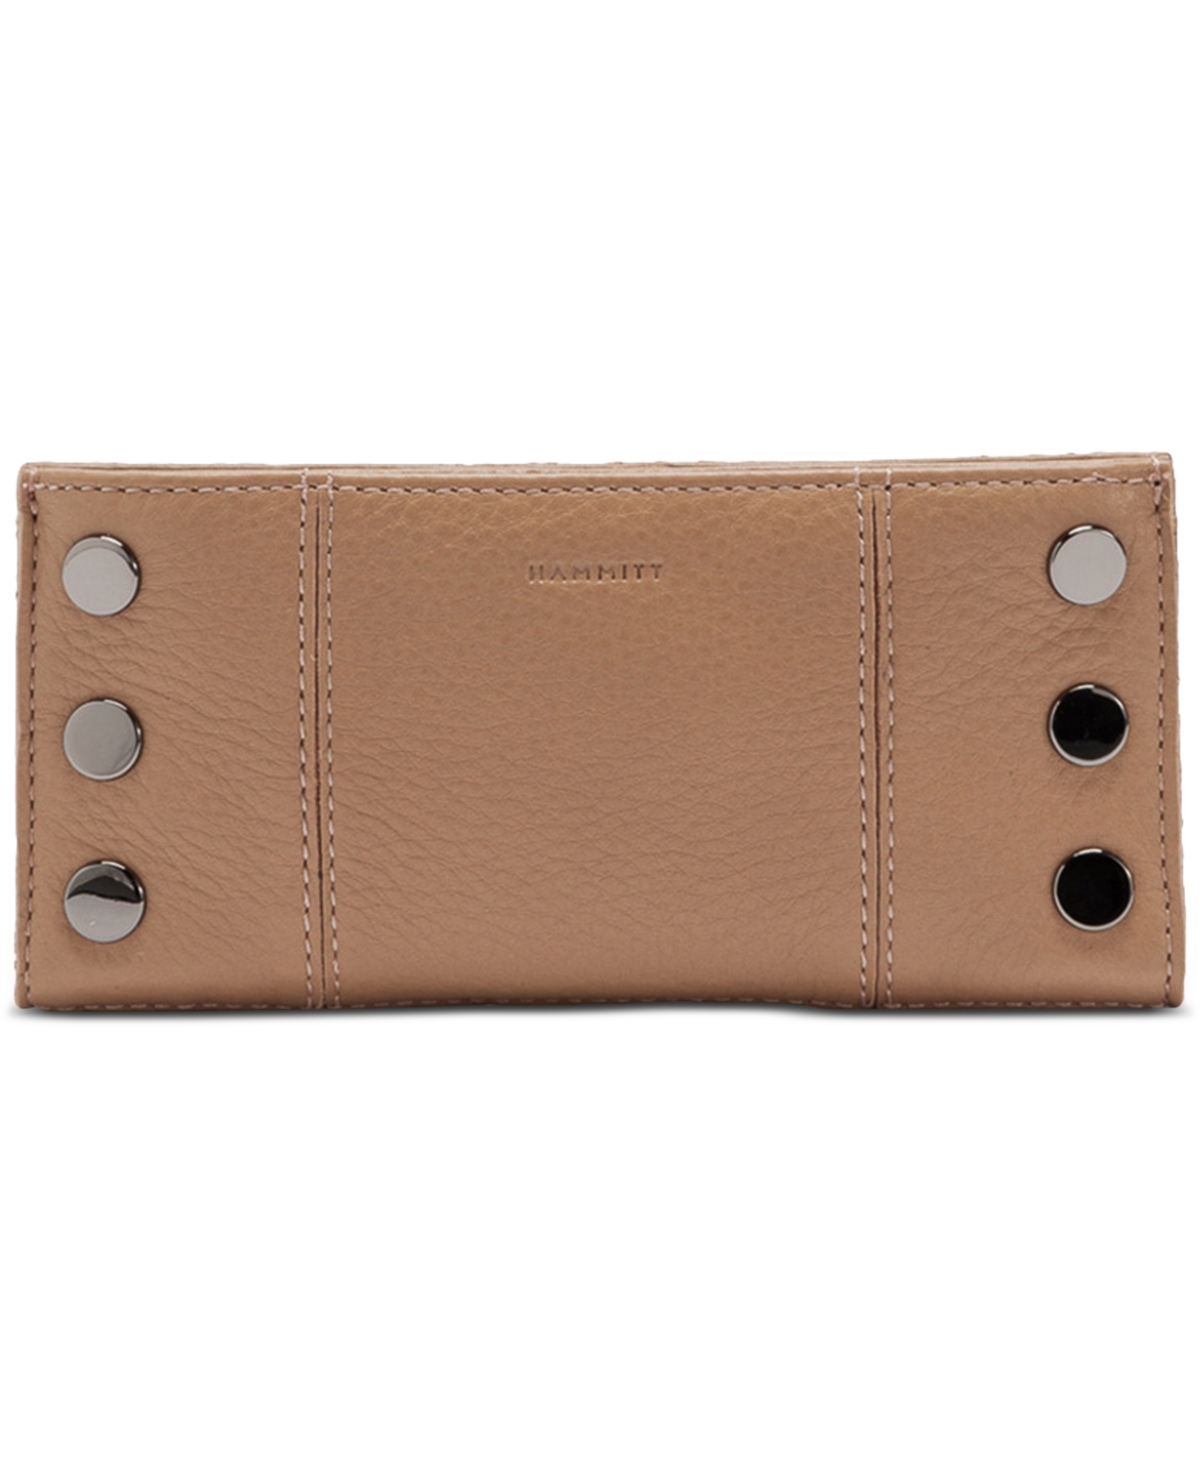 Hammitt 110 North Leather Wallet In Biscotti